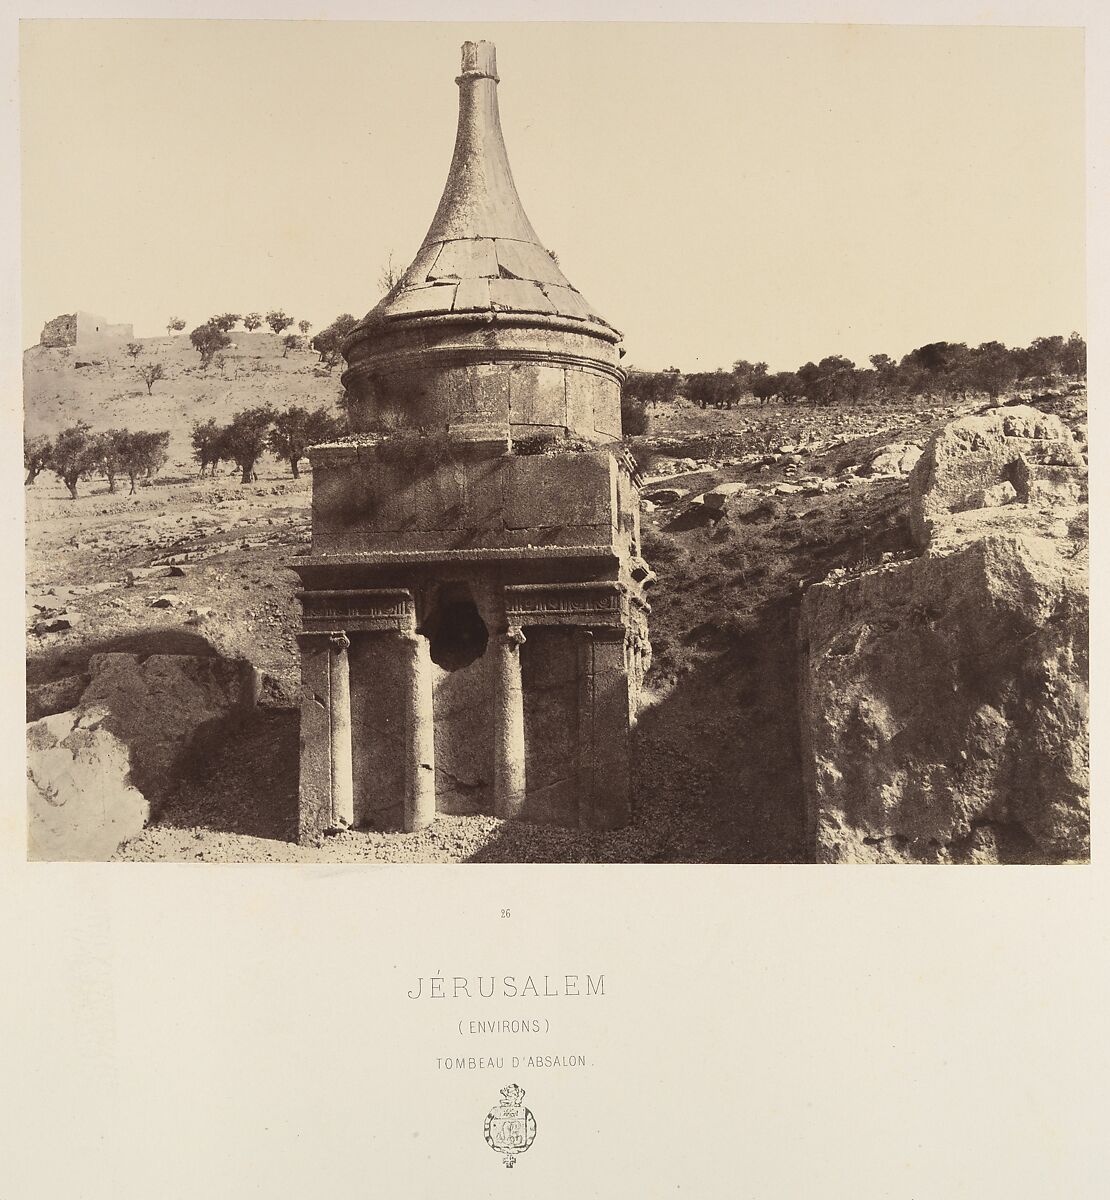 Jérusalem. (Environs) Tombeau d'Absalon, Louis de Clercq (French, 1837–1901), Albumen silver print from paper negative 